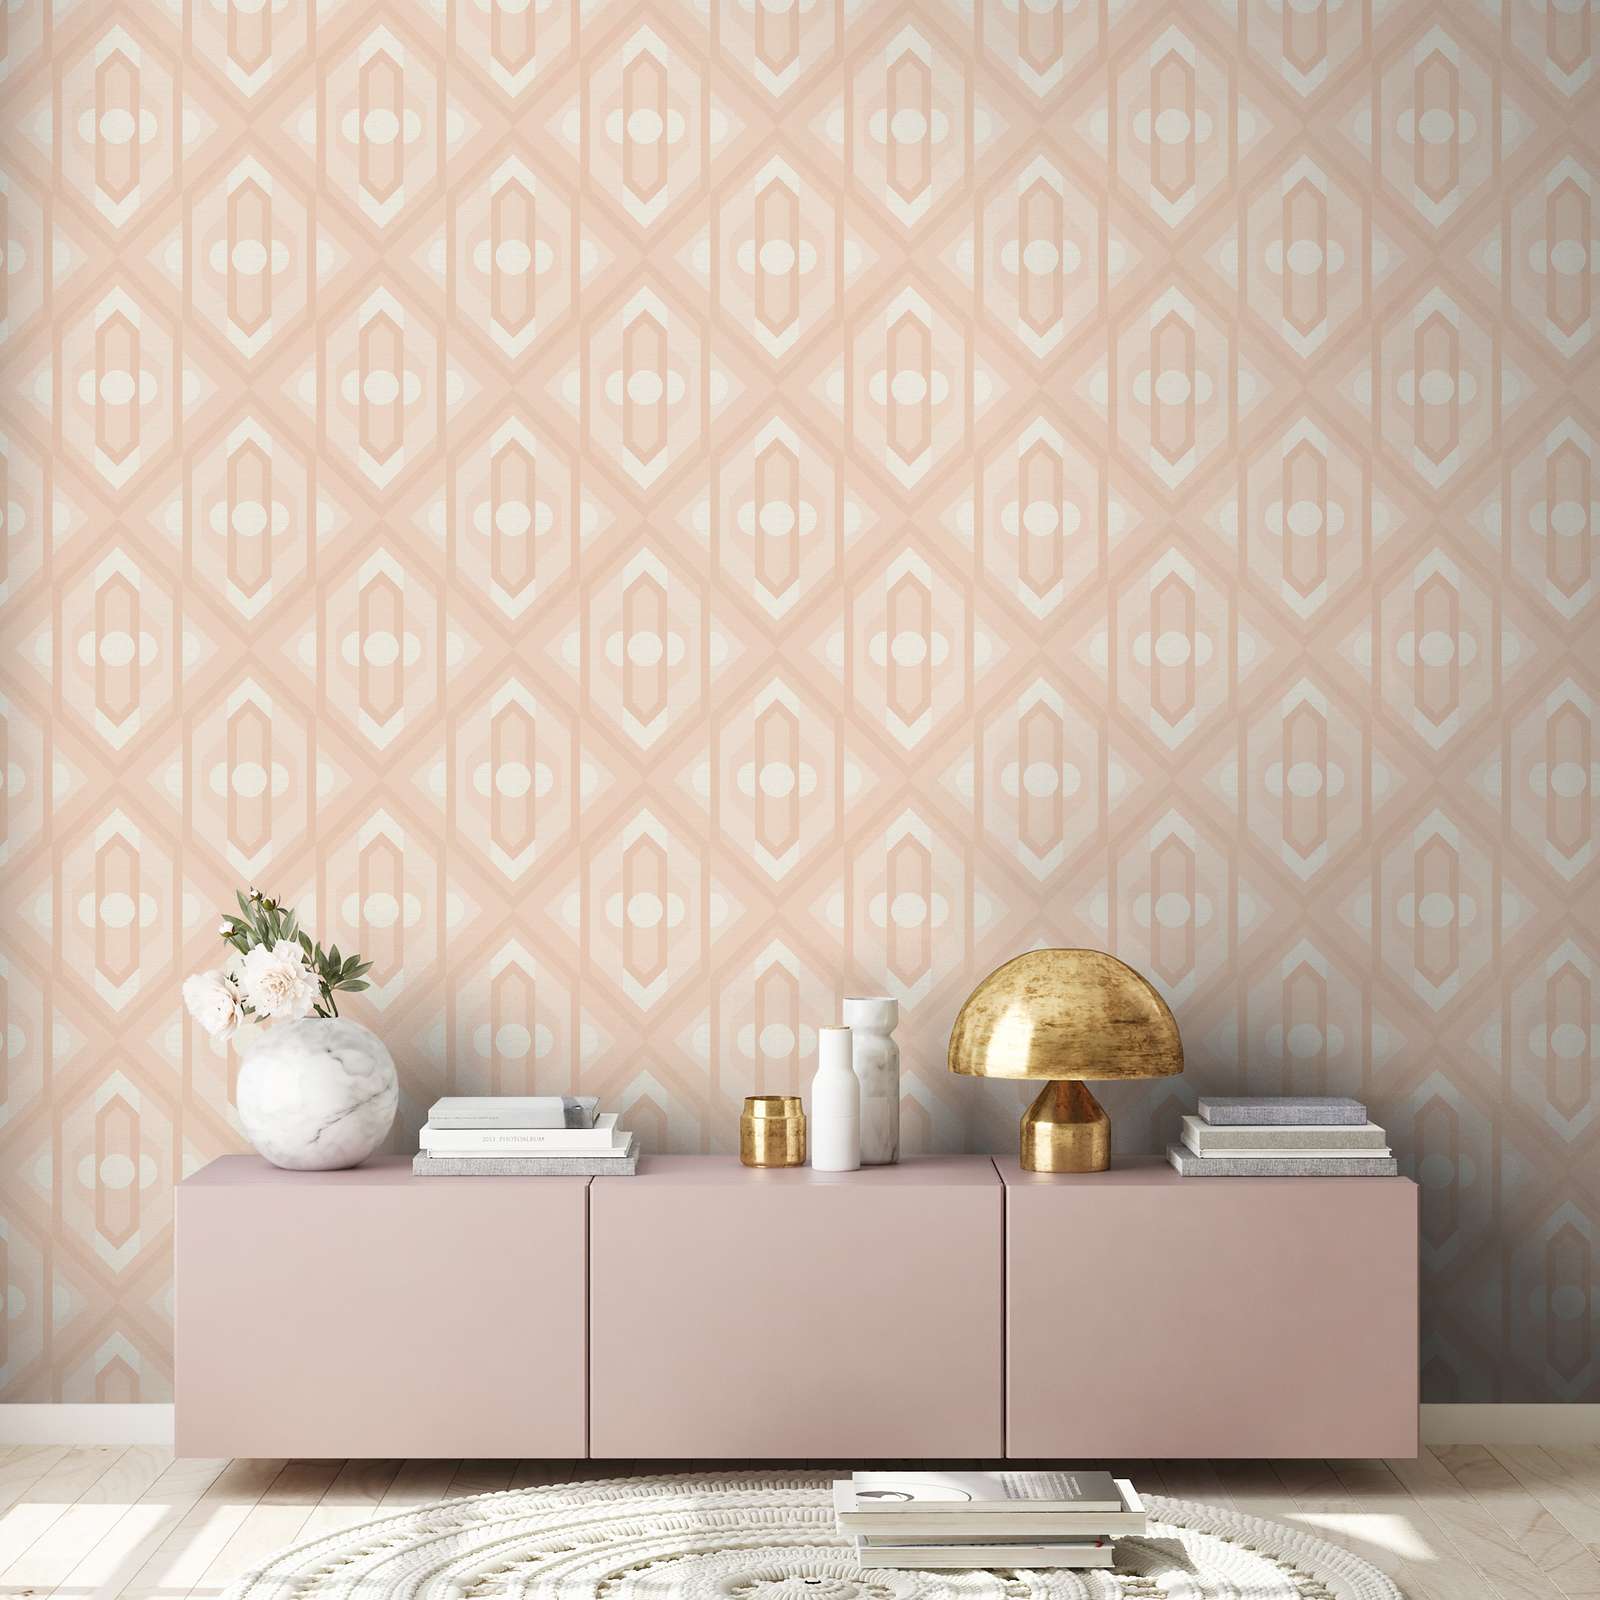             Retro wallpaper with geometric ornaments in soft colours - beige, cream, white
        